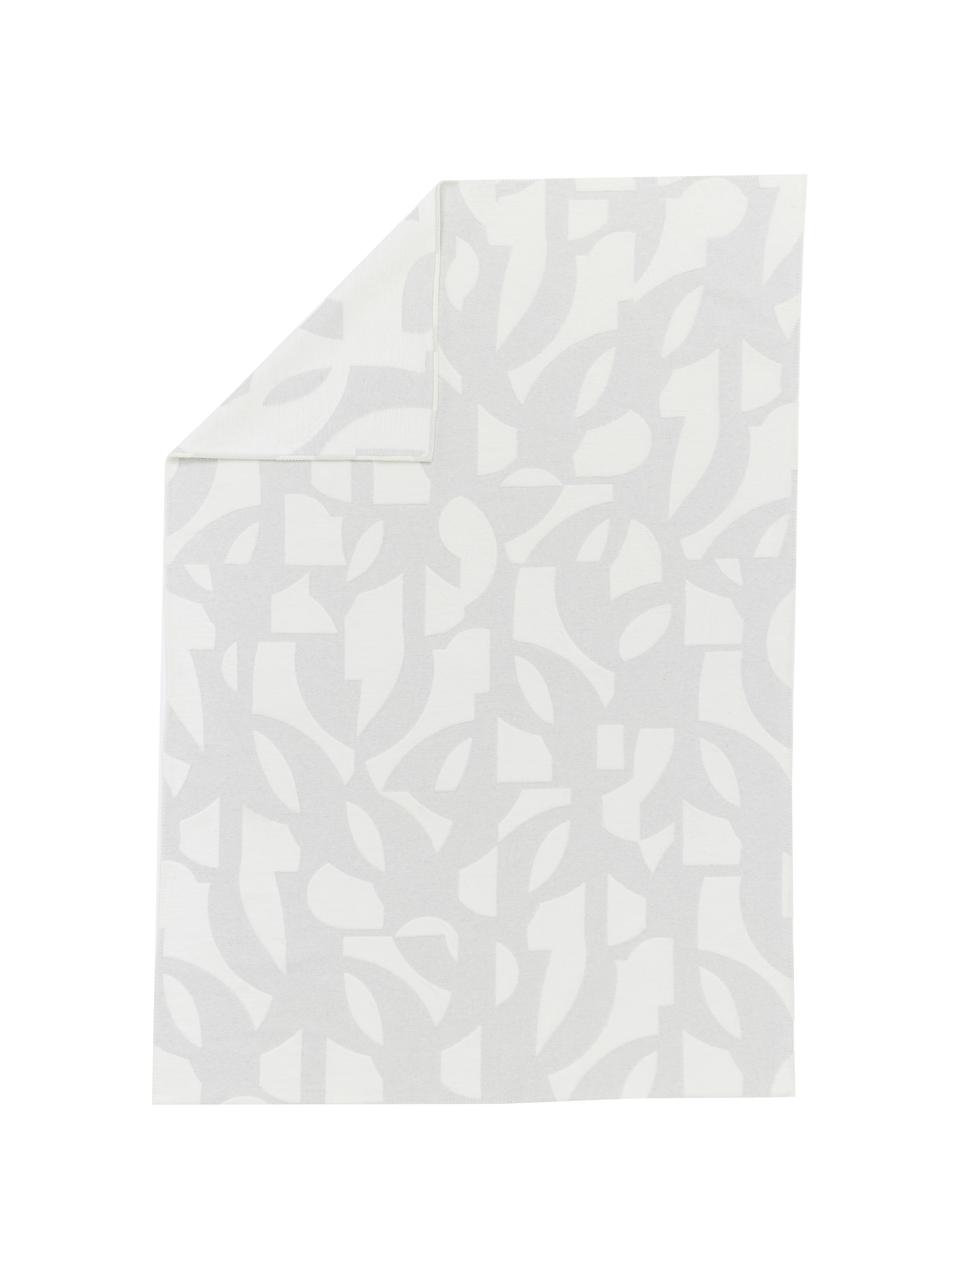 Koc z flaneli Grafic, 85% bawełna, 15% poliakryl, Szary, biały, S 130 x D 200 cm